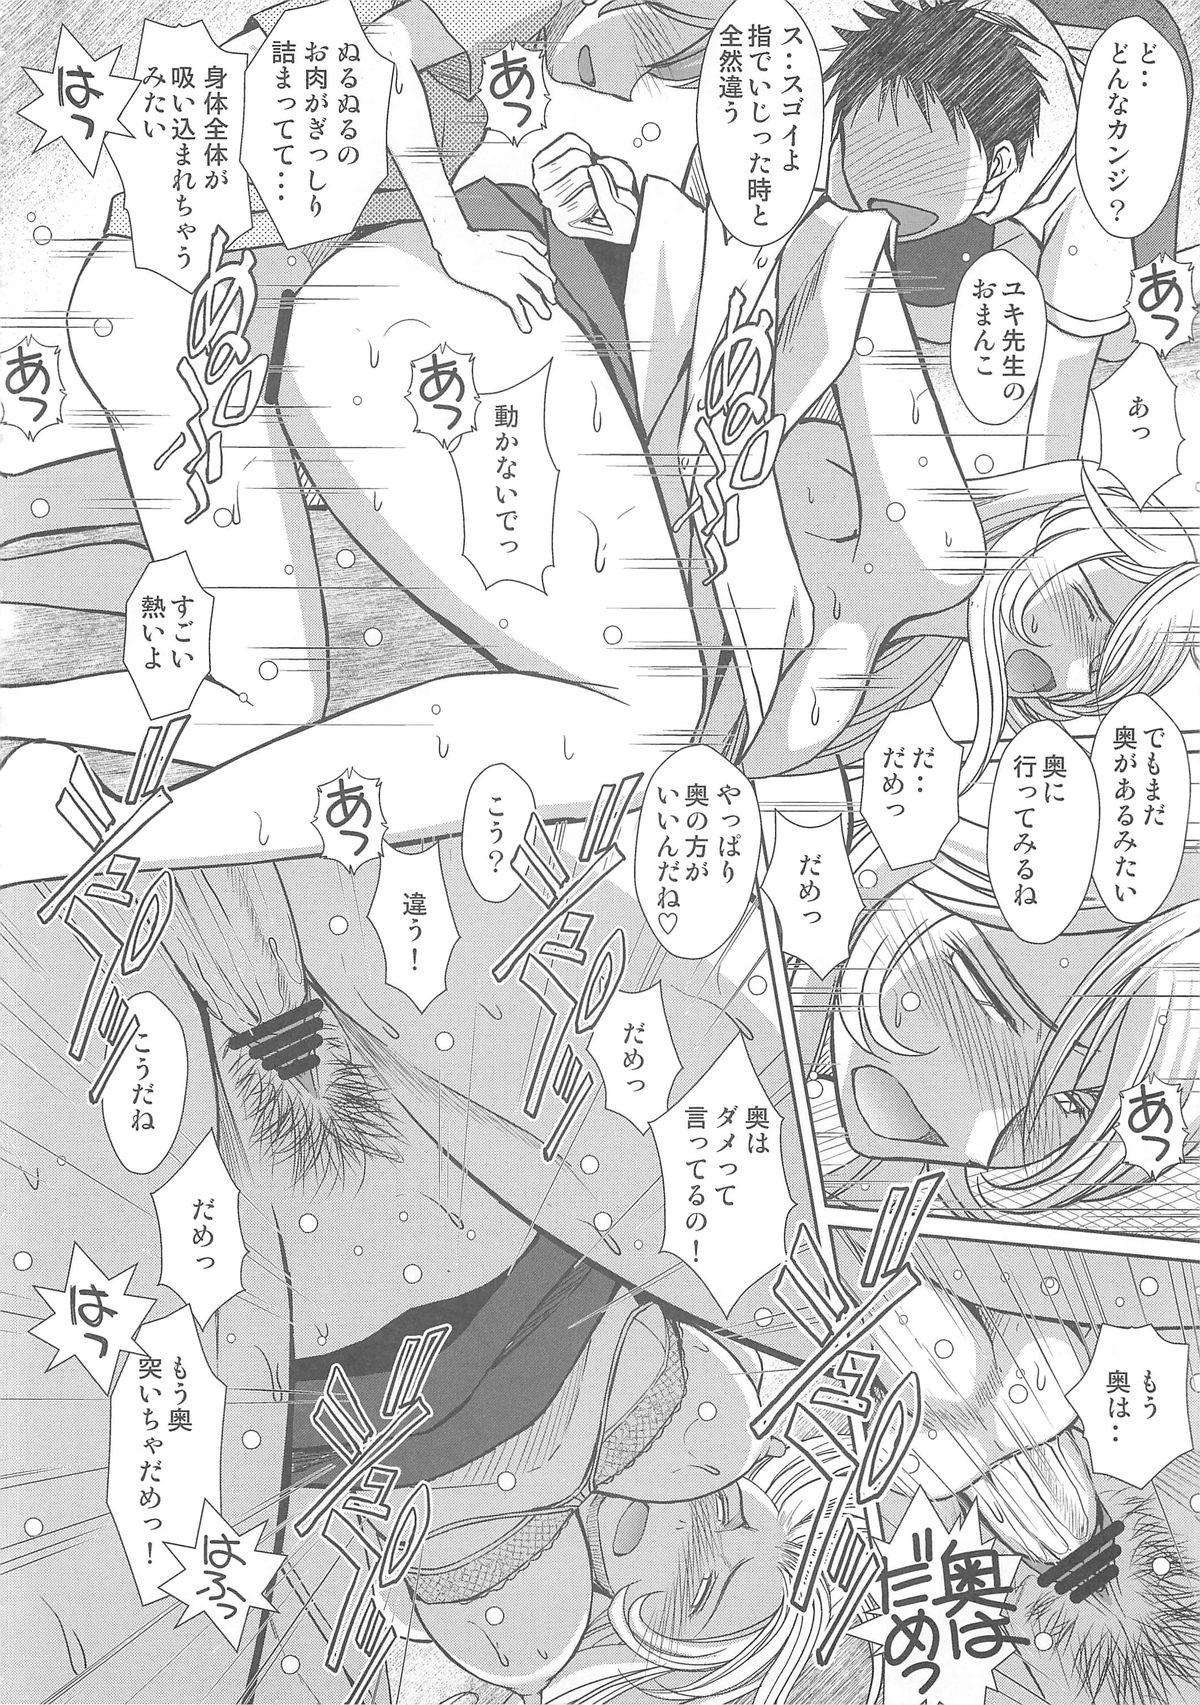 Alone 2199-nen no Mori Yuki - Space battleship yamato Best - Page 11